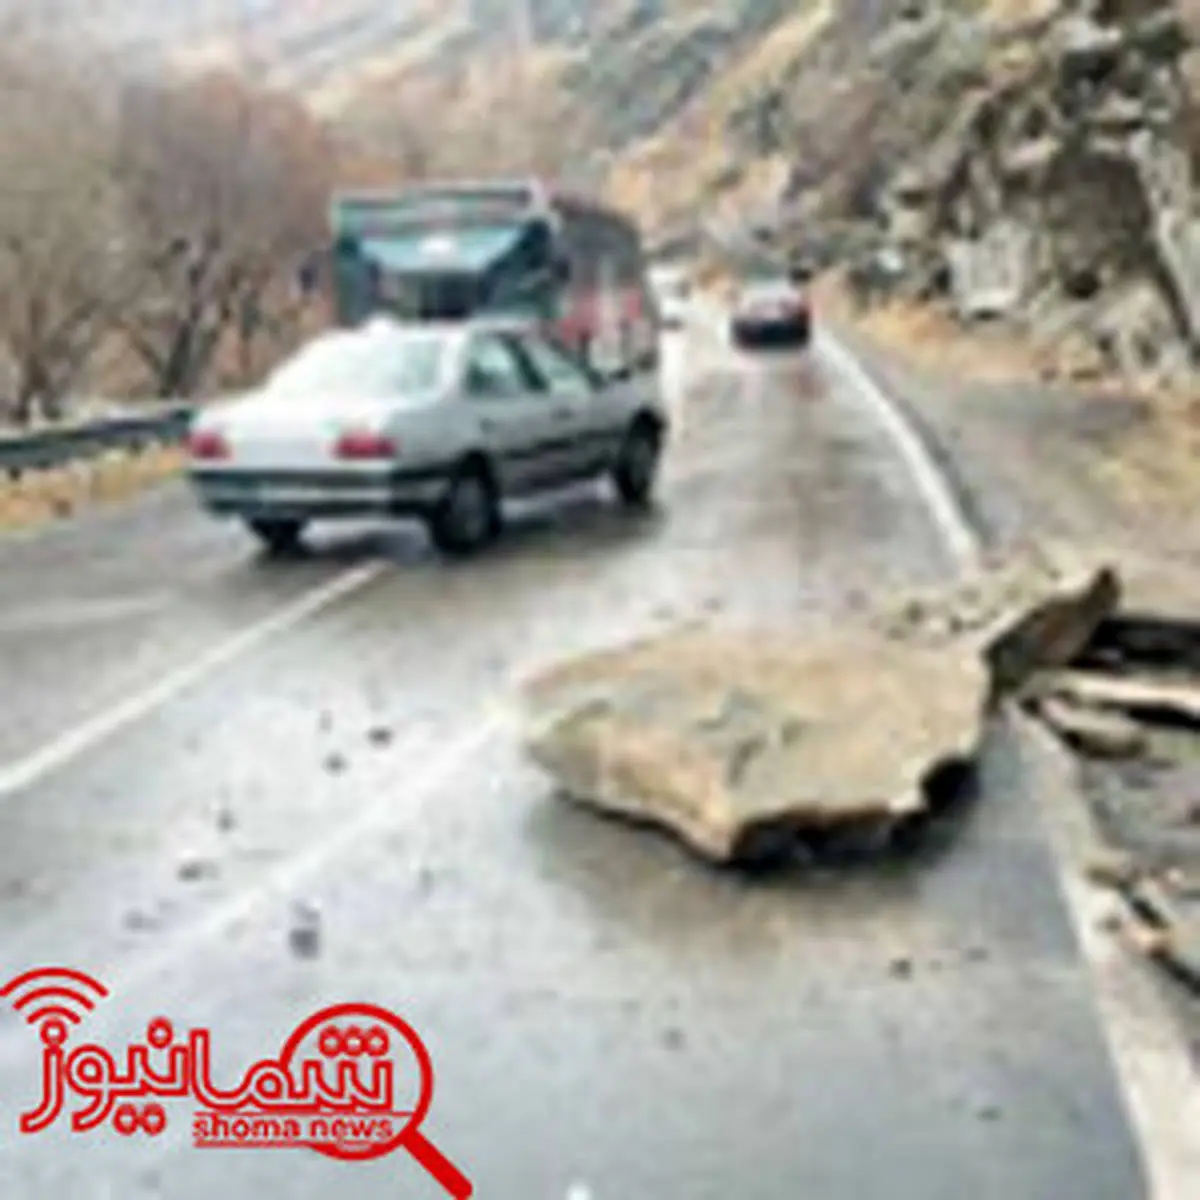 خطر ریزش سنگ در جاده چالوس